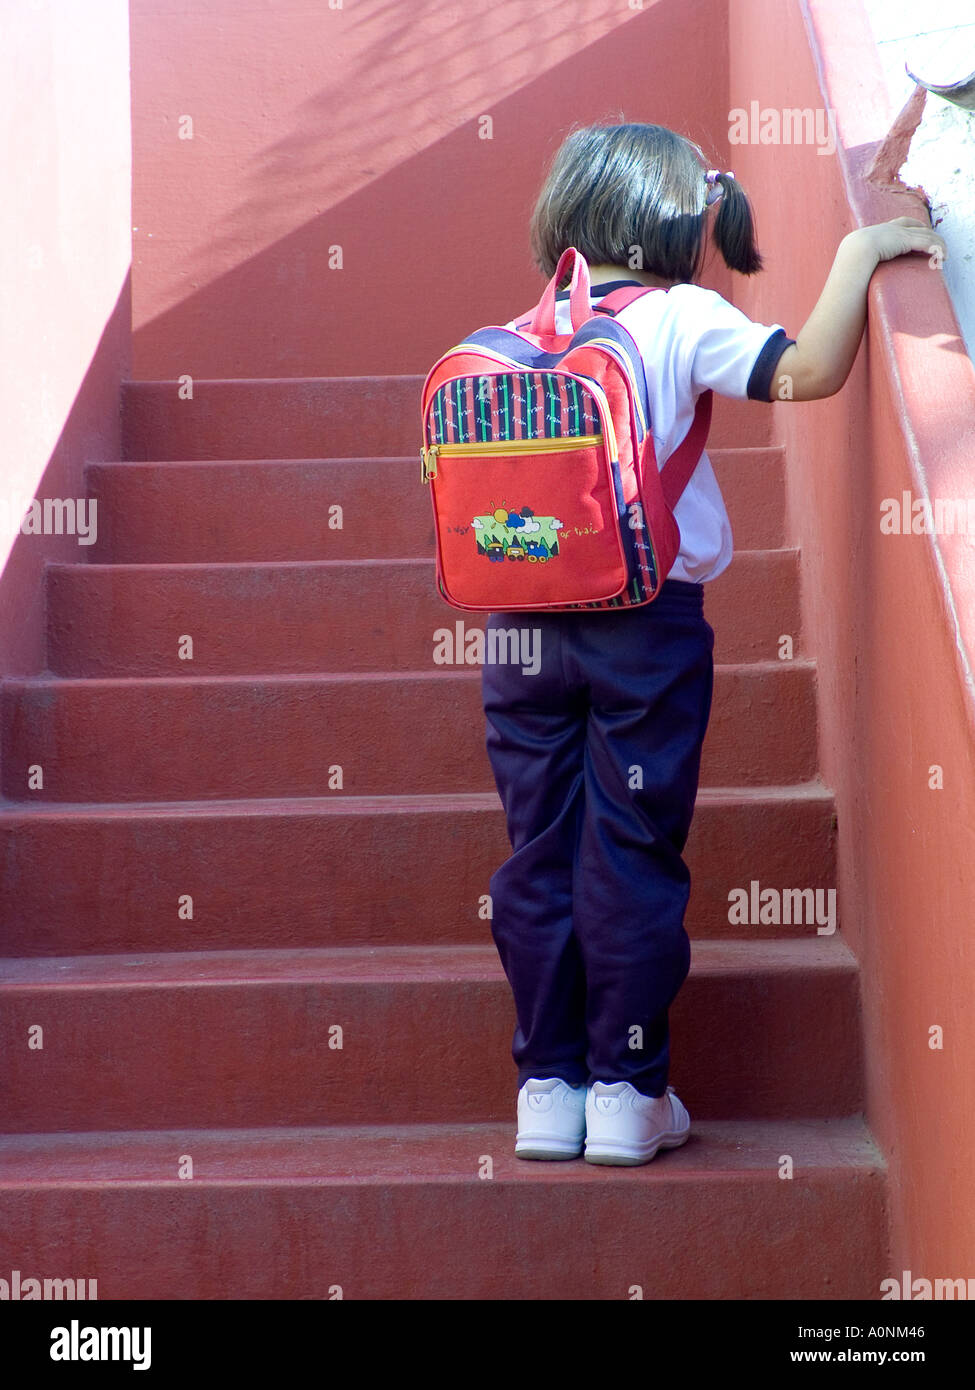 Der erste Schultag das kleine Schulmädchen 4-6jährig denkt an die Schritte, die zum Klassenzimmer führen. Unsicher, schüchtern, nervös, die ersten Tage an der neuen Schule. Stockfoto